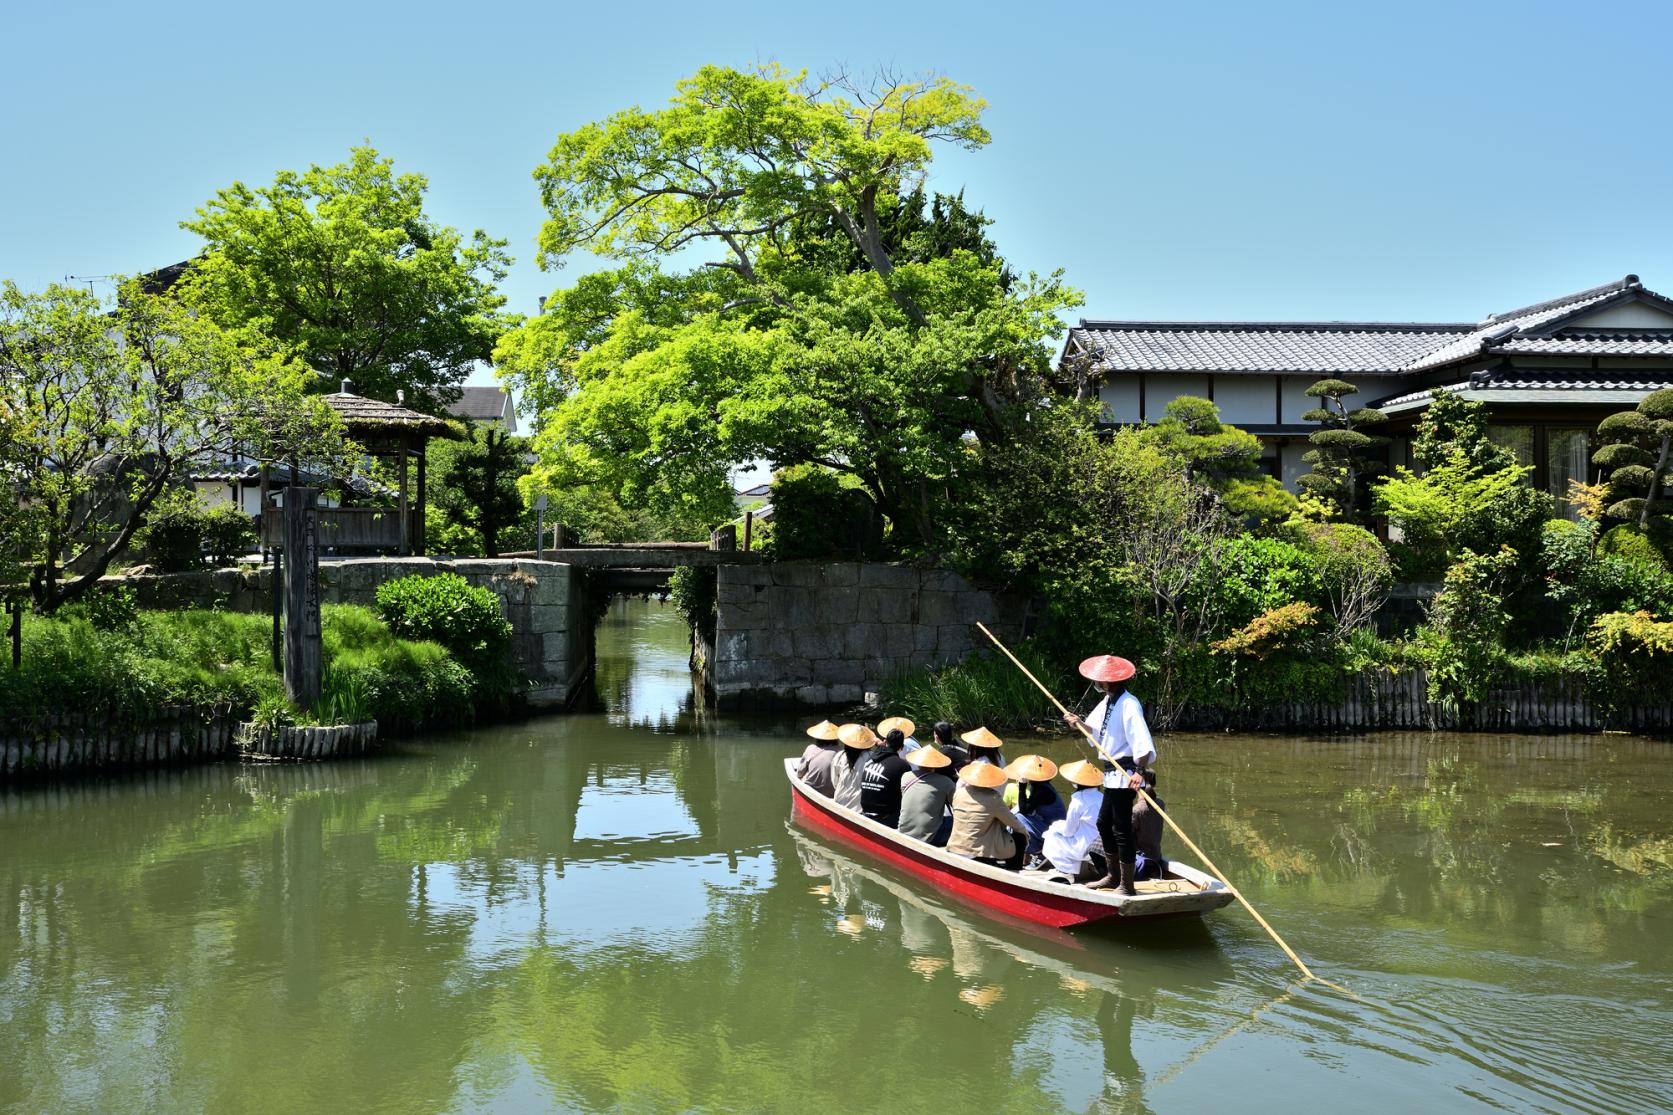 river cruise of the Yanagawa